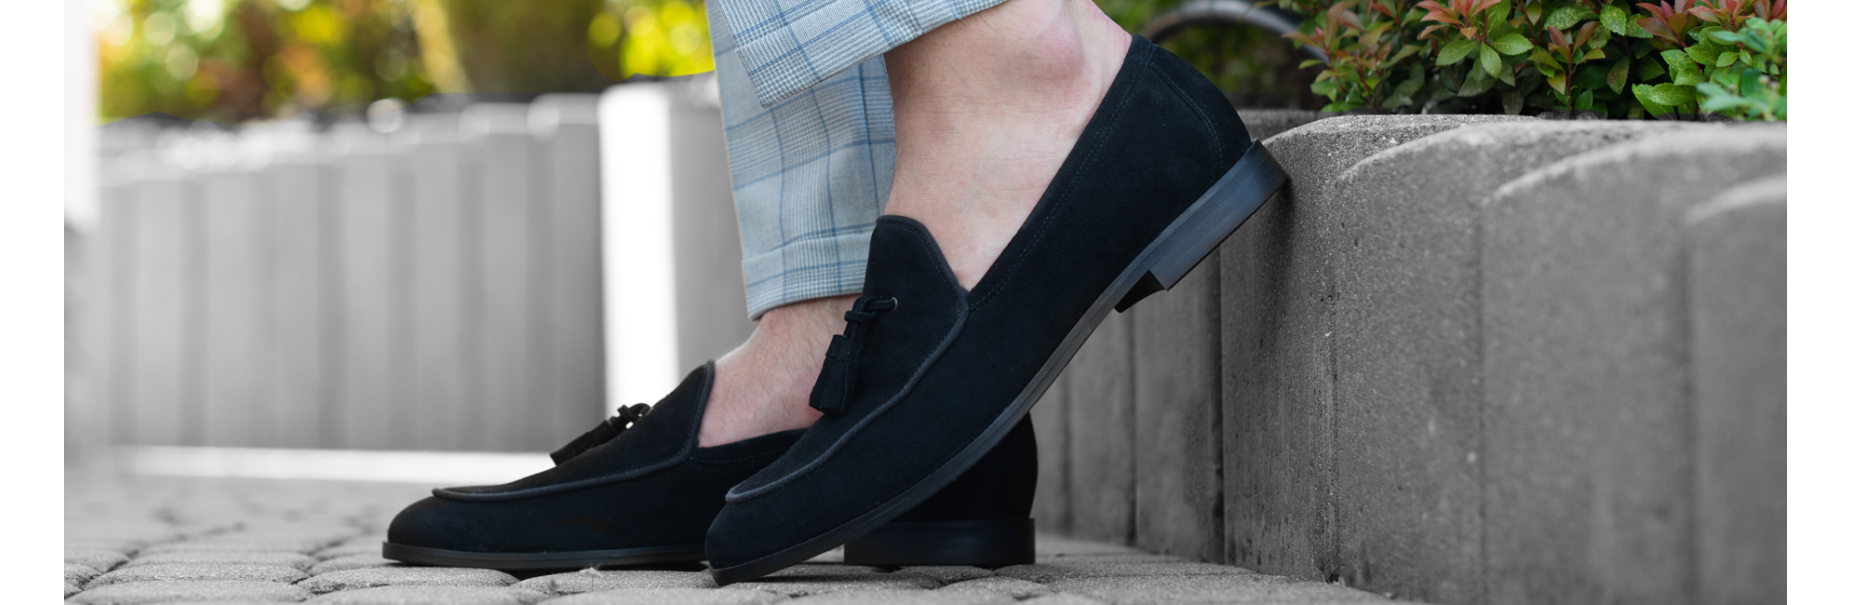 Obuwie typu loafers - najnowsze trendy, do czego nosimy?